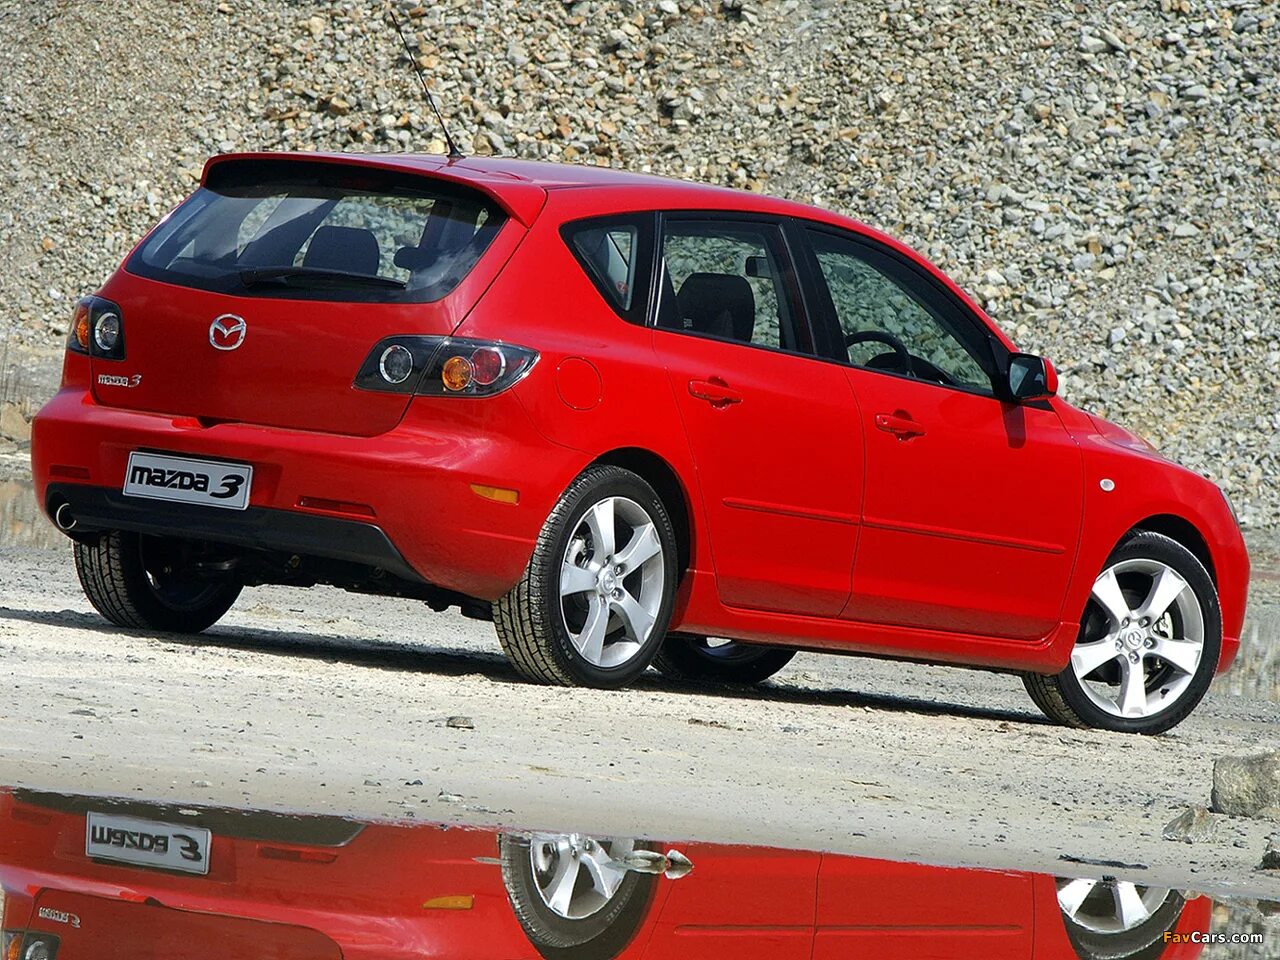 Mazda 3 BK Hatchback. Мазда 3 хэтчбек 2003. Мазда 3 спорт хэтчбек. Мазда 3 BK хэтчбек спорт. Мазда 3 2003